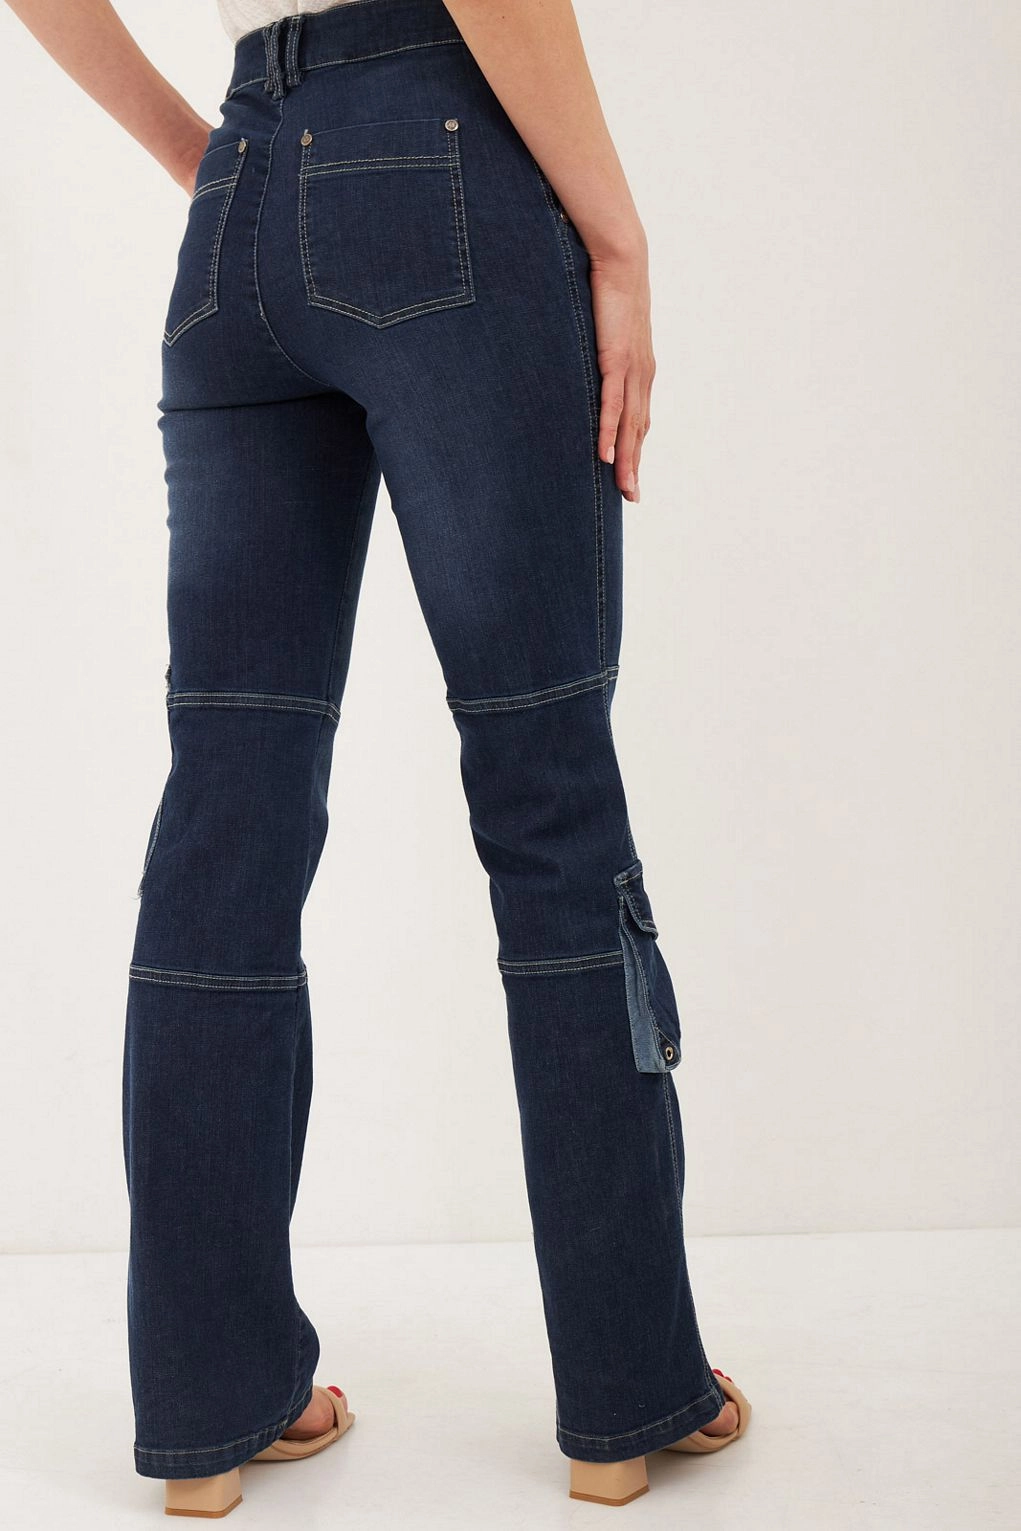 מכנסיים פטל ג'ינס כחול